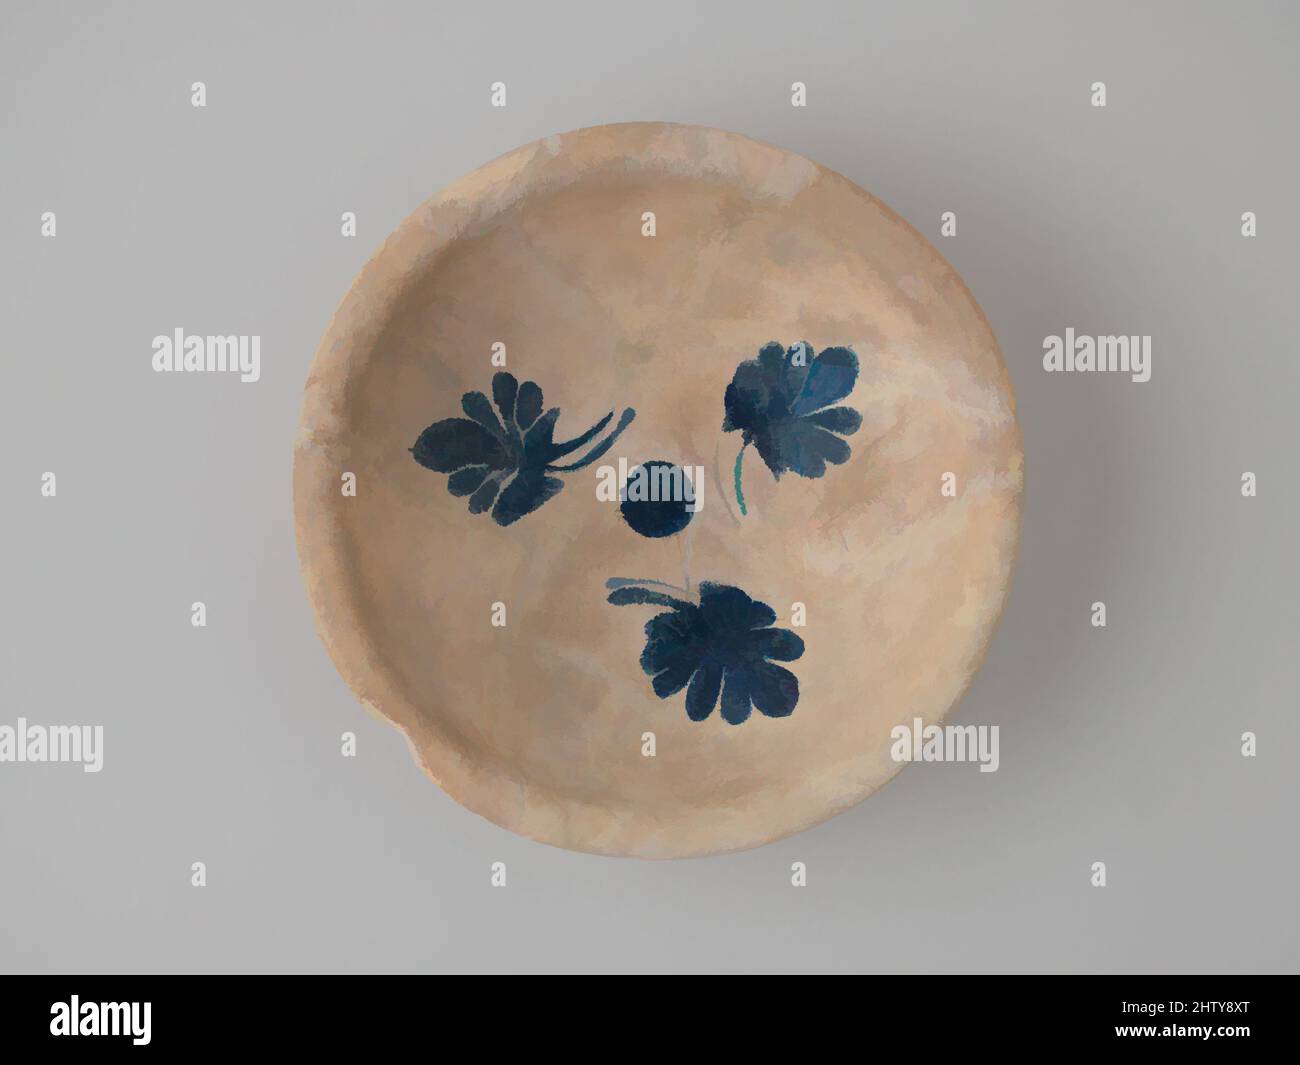 Kunst, inspiriert von importierten Kobalt-auf-White Bowl, 9.–10. Jahrhundert, zugeschrieben dem Irak oder dem westlichen Iran. Im Iran ausgegraben, Nishapur, Steingut; blau auf opaker weißer (Zinn-)Glasur gemalt, H. 2 7/16 Zoll (6,2 cm), Keramik, Kobaltblau war beliebt bei bestimmten Arten von neunten Jahrhundert irakischen, Classic Works modernisiert von Artotop mit einem Schuss Moderne. Formen, Farbe und Wert, auffällige visuelle Wirkung auf Kunst. Emotionen durch Freiheit von Kunstwerken auf zeitgemäße Weise. Eine zeitlose Botschaft, die eine wild kreative neue Richtung verfolgt. Künstler, die sich dem digitalen Medium zuwenden und die Artotop NFT erschaffen Stockfoto